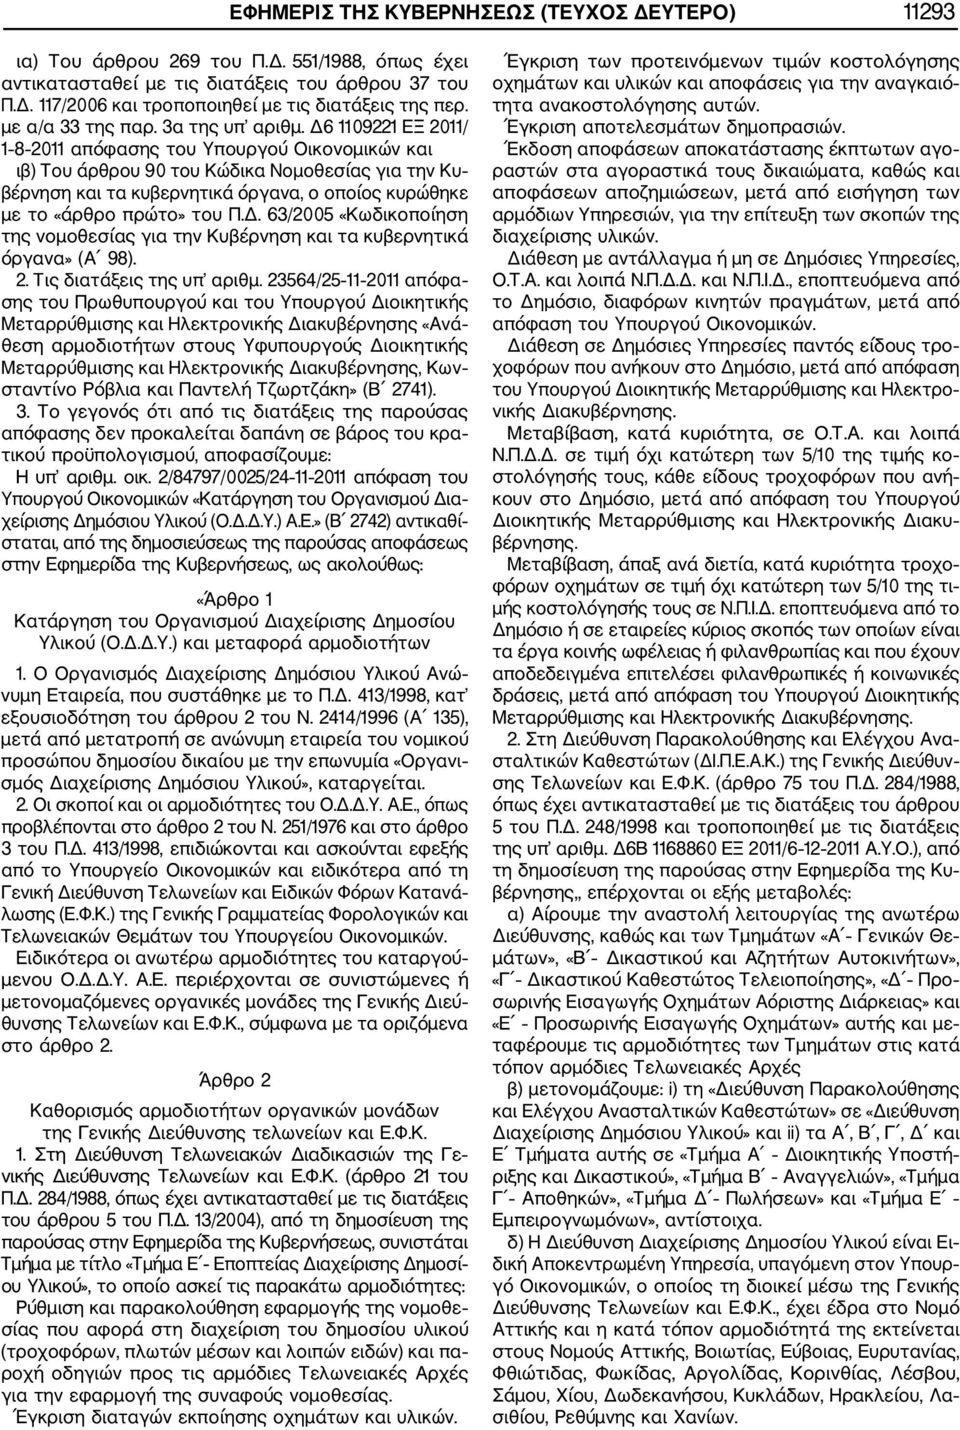 Δ6 1109221 ΕΞ 2011/ 1 8 2011 απόφασης του Υπουργού Οικονομικών και ιβ) Του άρθρου 90 του Κώδικα Νομοθεσίας για την Κυ βέρνηση και τα κυβερνητικά όργανα, ο οποίος κυρώθηκε με το «άρθρο πρώτο» του Π.Δ. 63/2005 «Κωδικοποίηση της νομοθεσίας για την Κυβέρνηση και τα κυβερνητικά όργανα» (Α 98).